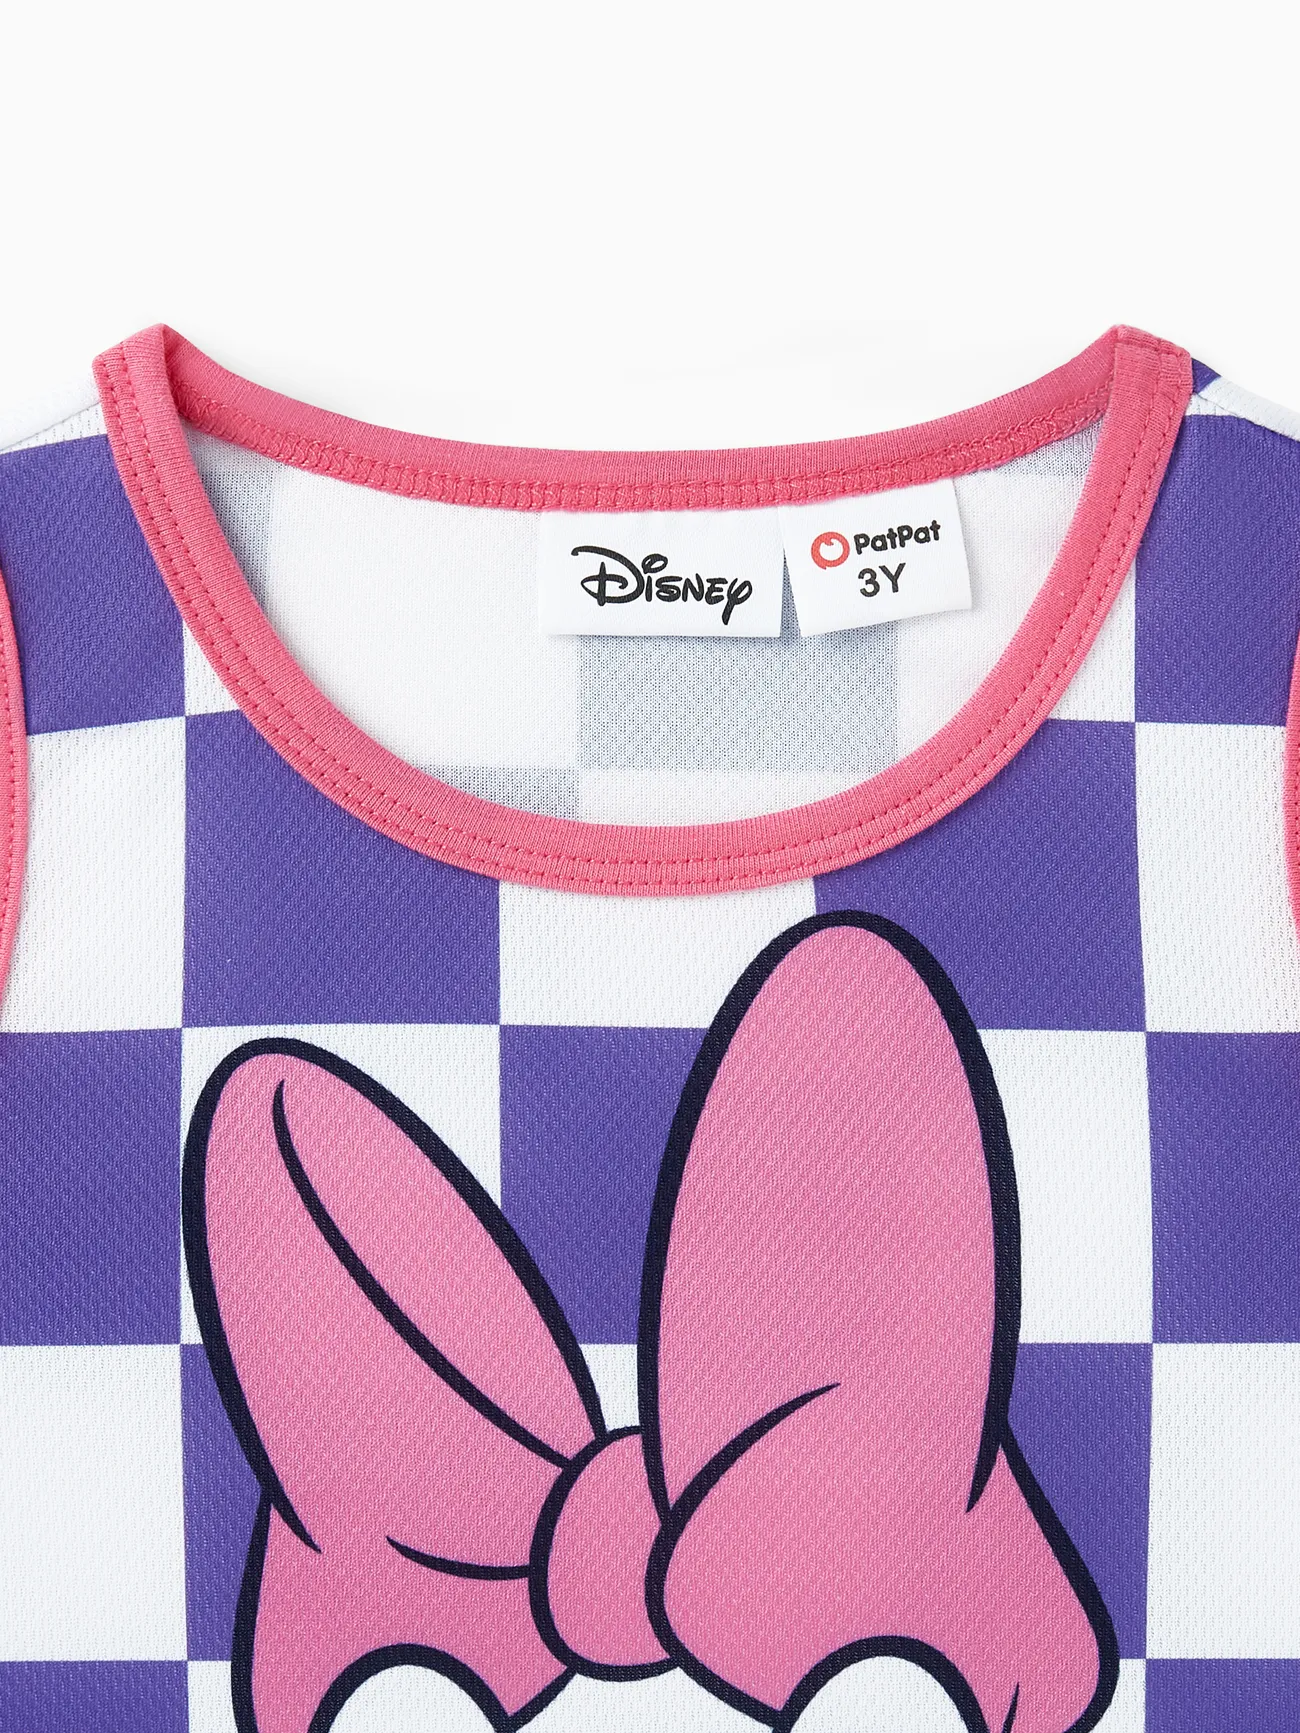 迪士尼米奇和朋友們 2 件裝幼兒/小女孩將死網格圖案運動背心和緊身褲套裝 紫色 big image 1